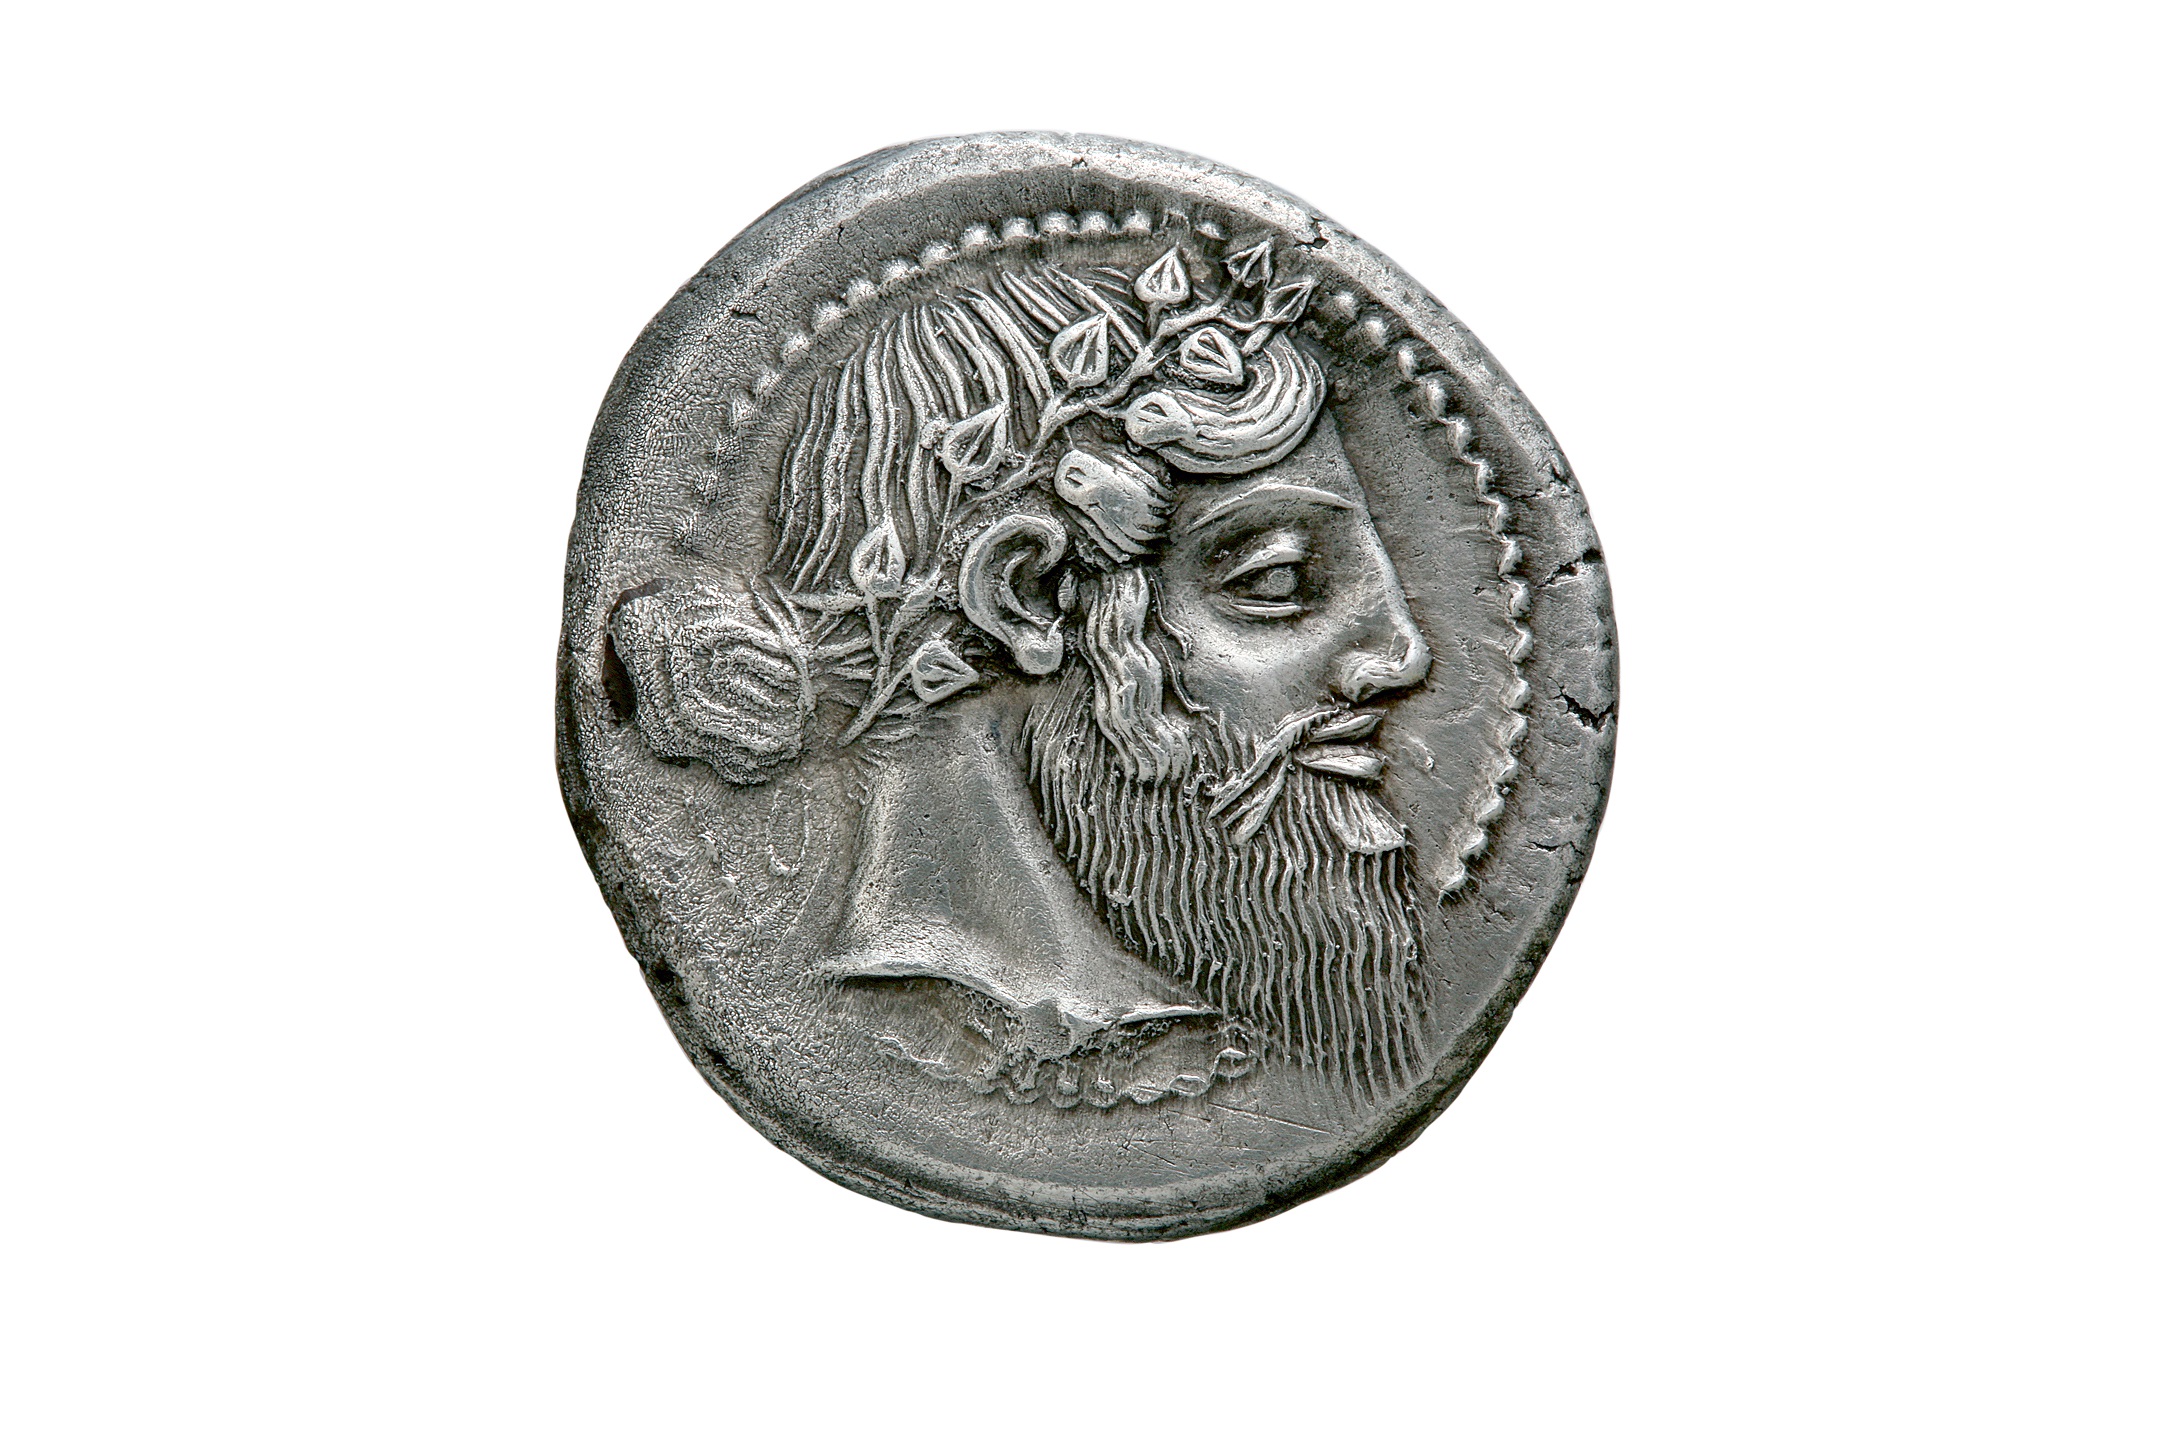 Νόμισμα της σικελικής Νάξου με τη μορφή του Διόνυσου